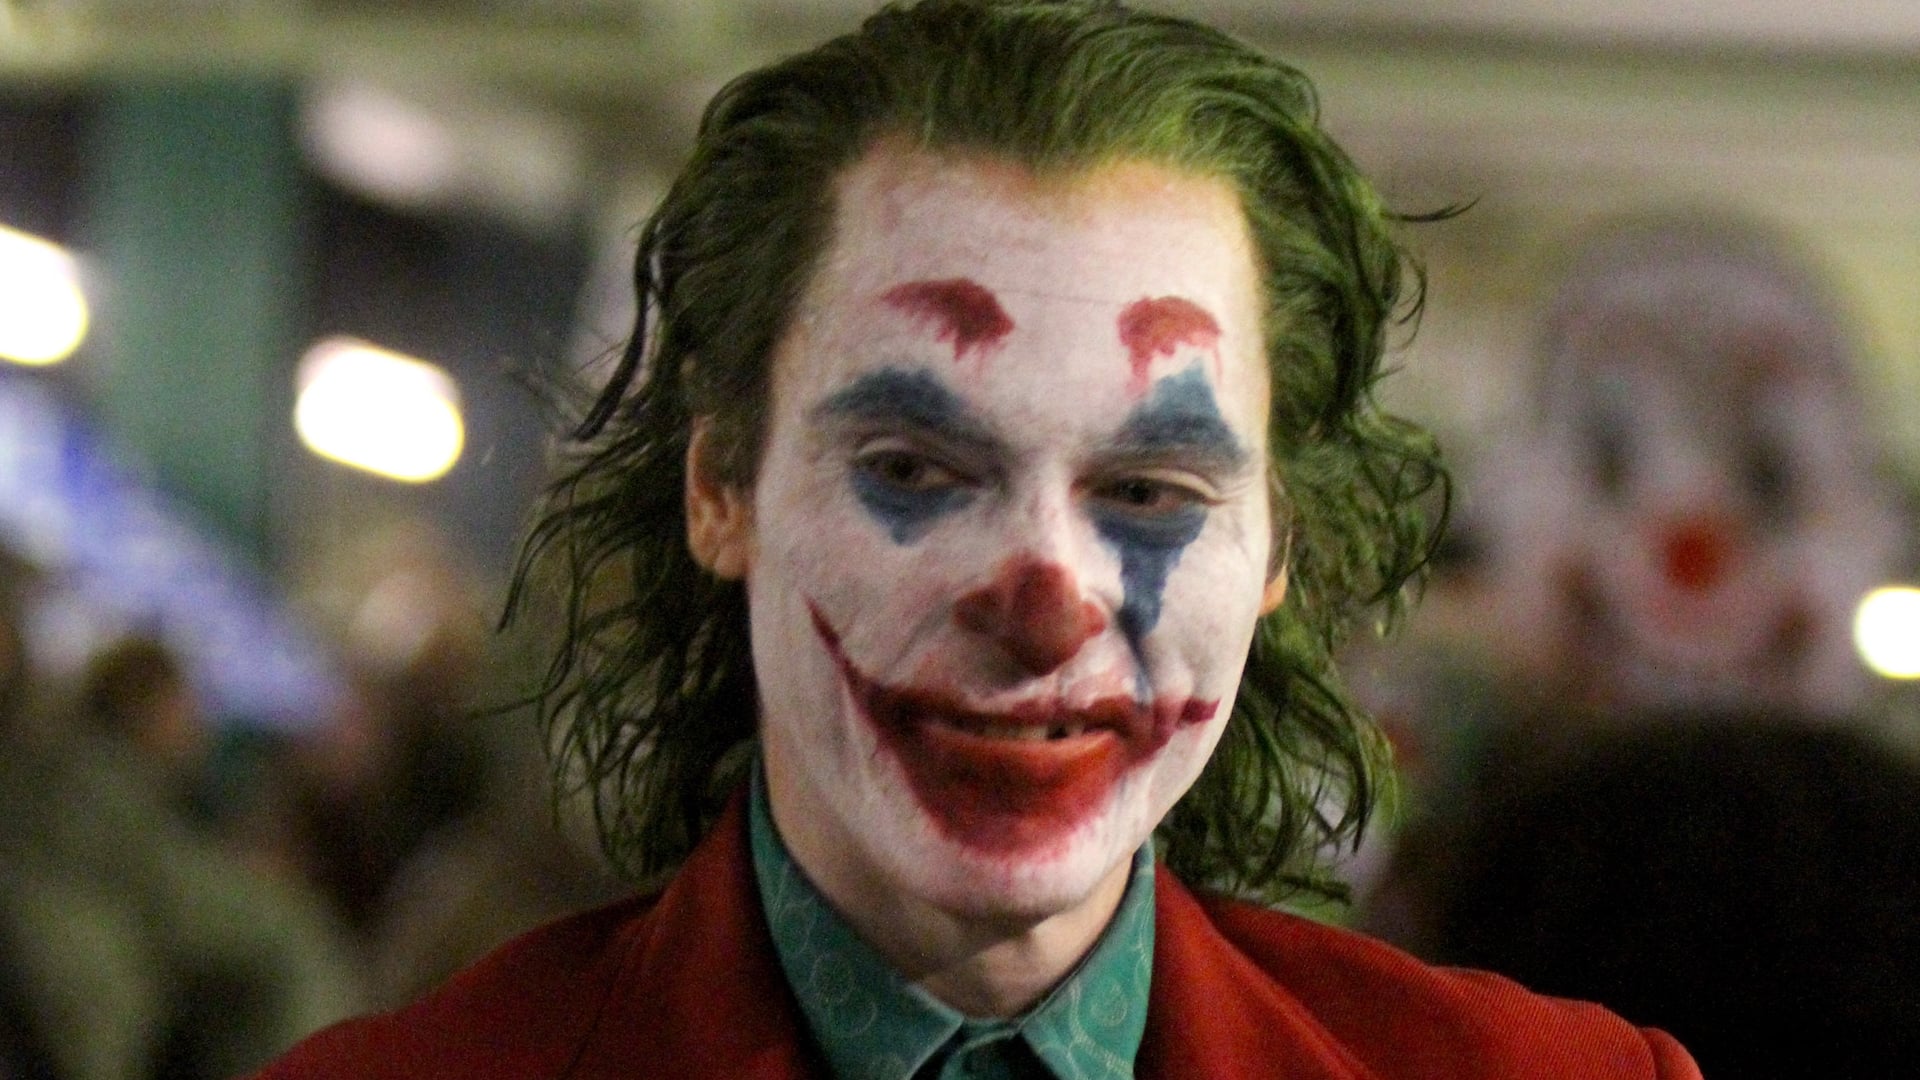 Joker : Film qui a reçu le plus de plaintes au Royaume-Uni en 2019